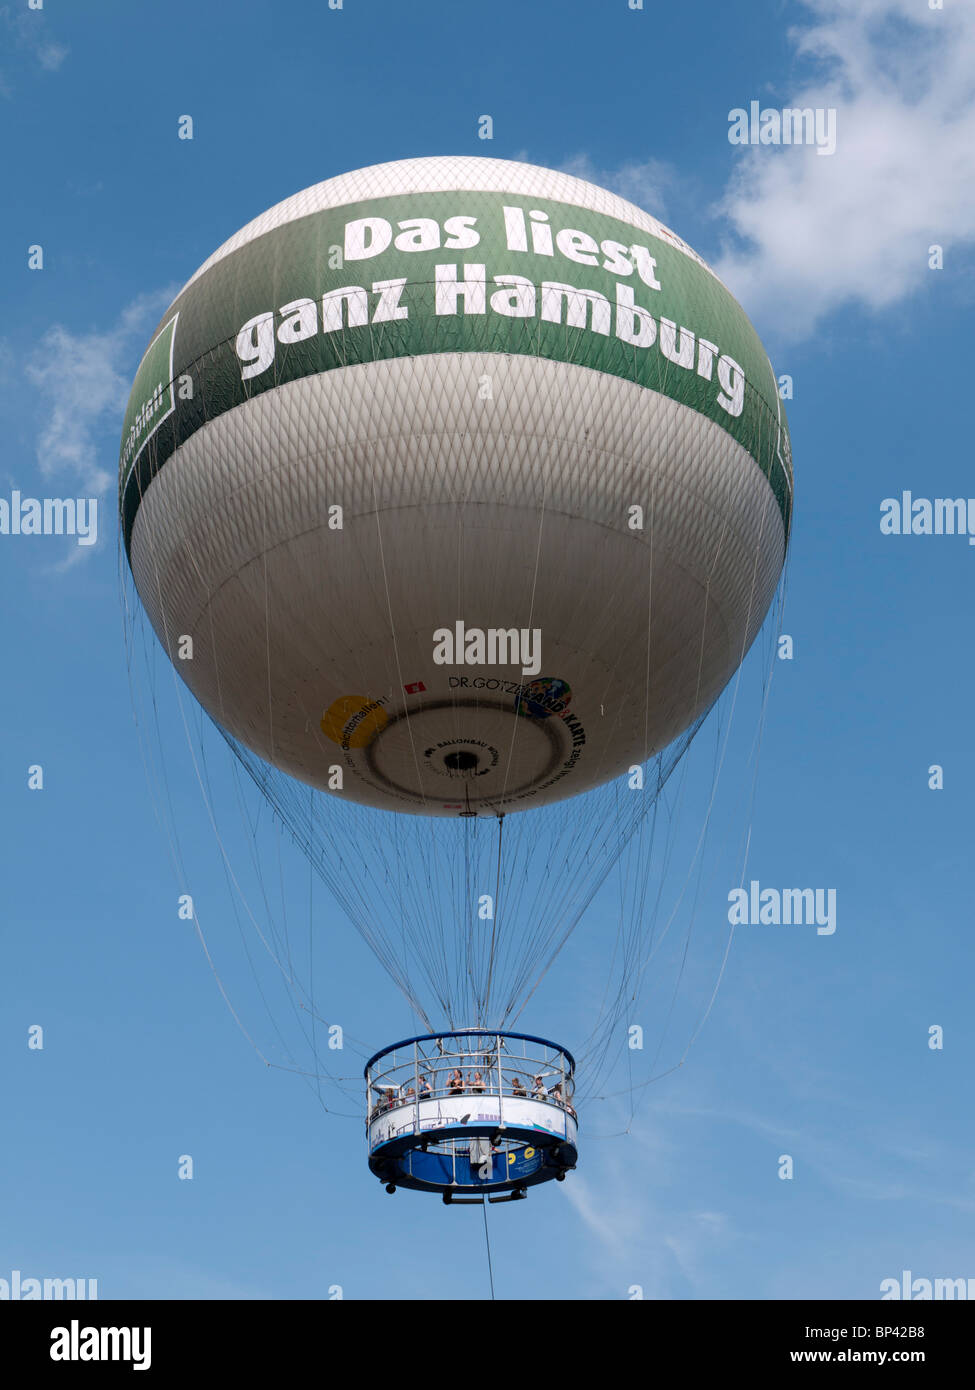 Tourist observation balloon in Hamburg Germany Stock Photo - Alamy